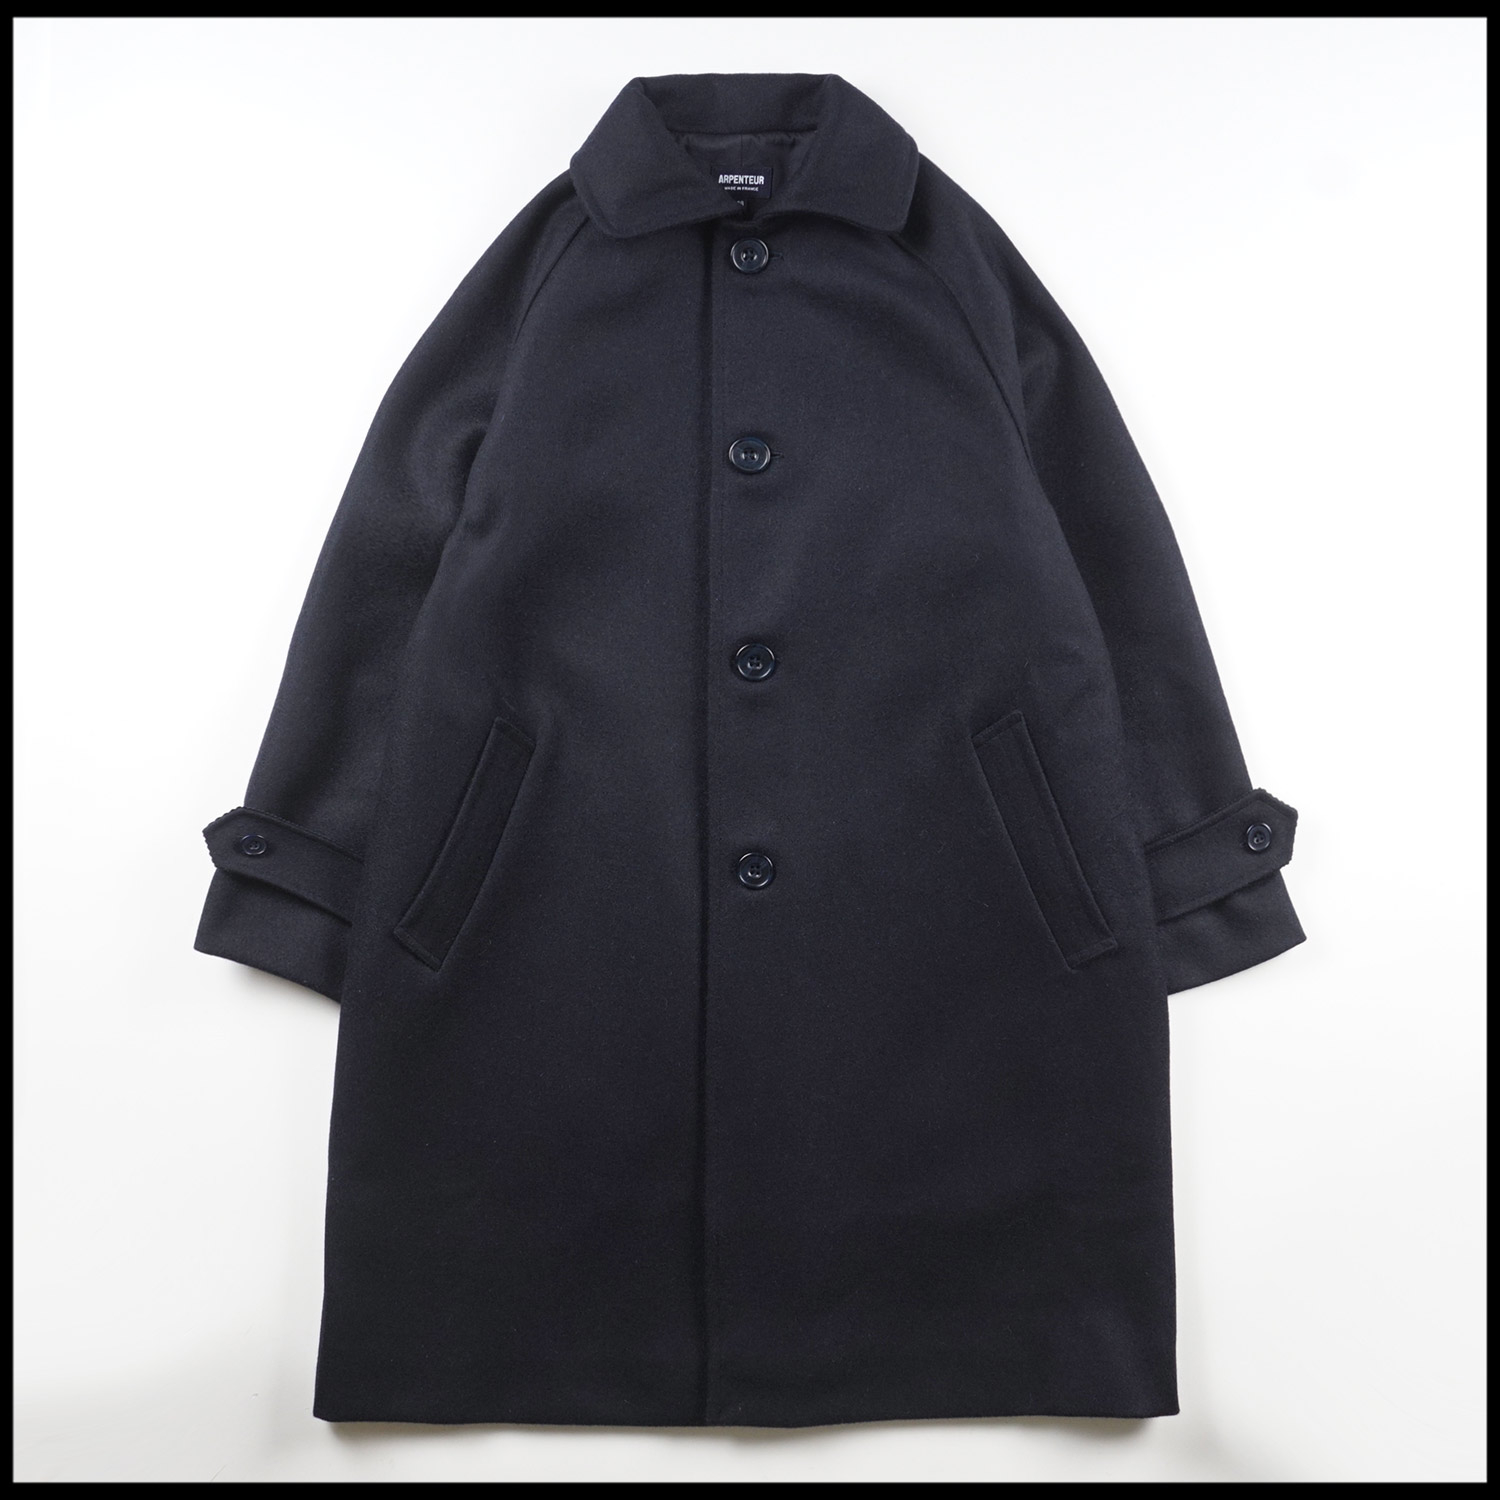 UTILE W coat in Navy color by Arpenteur Women's